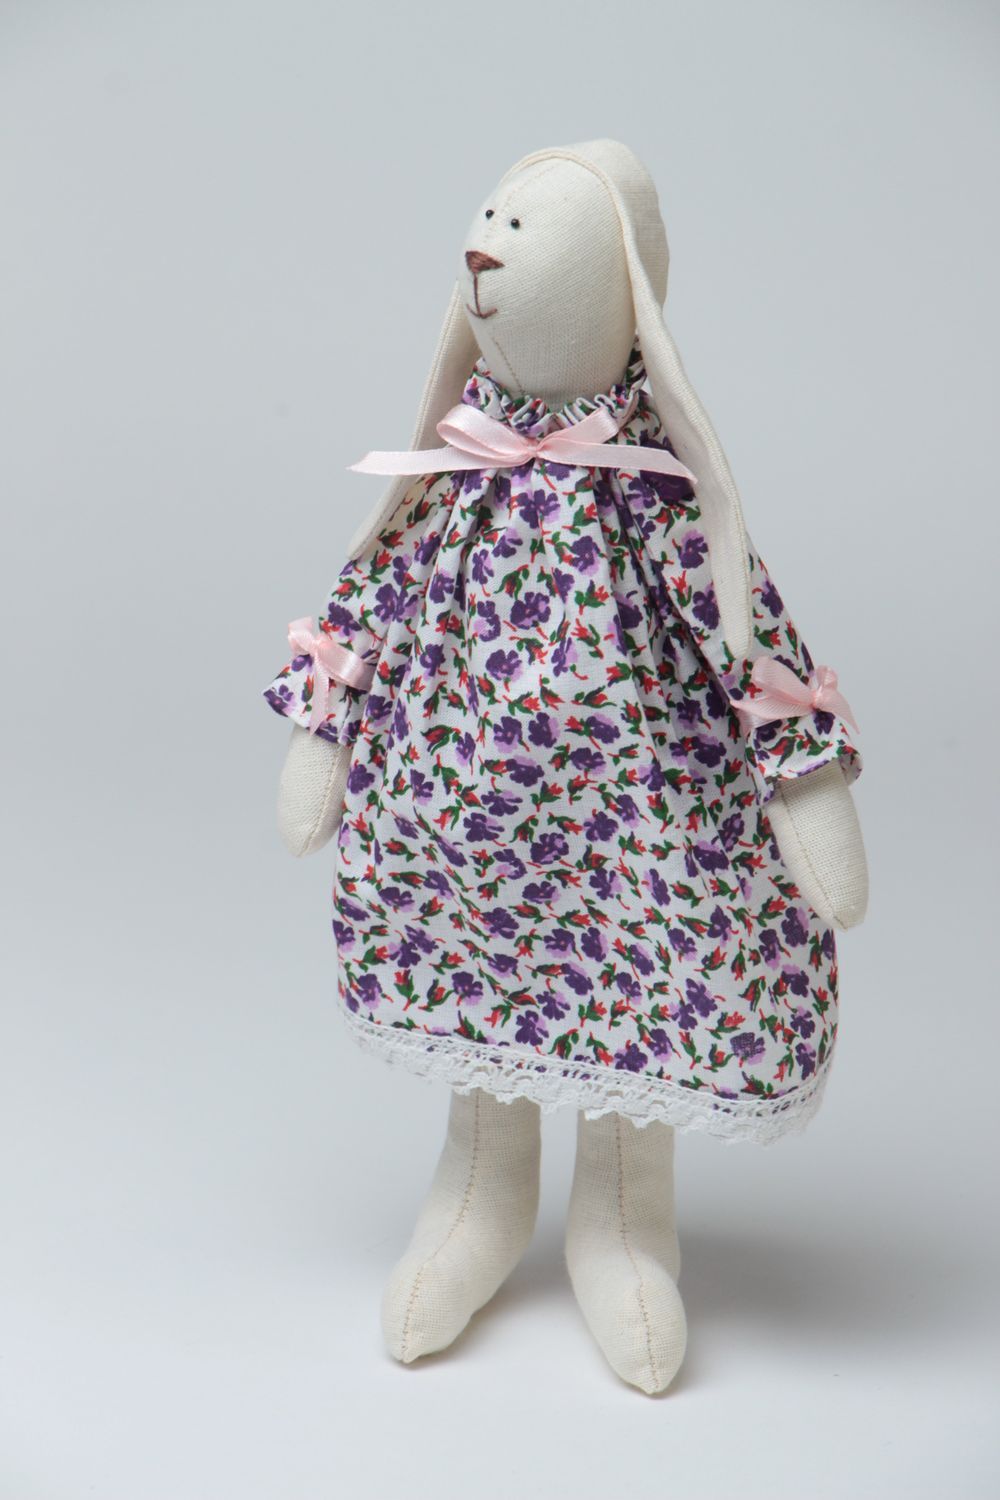 Muñeco de peluche original con forma de conejo de vestido estiloso hecho a mano foto 2